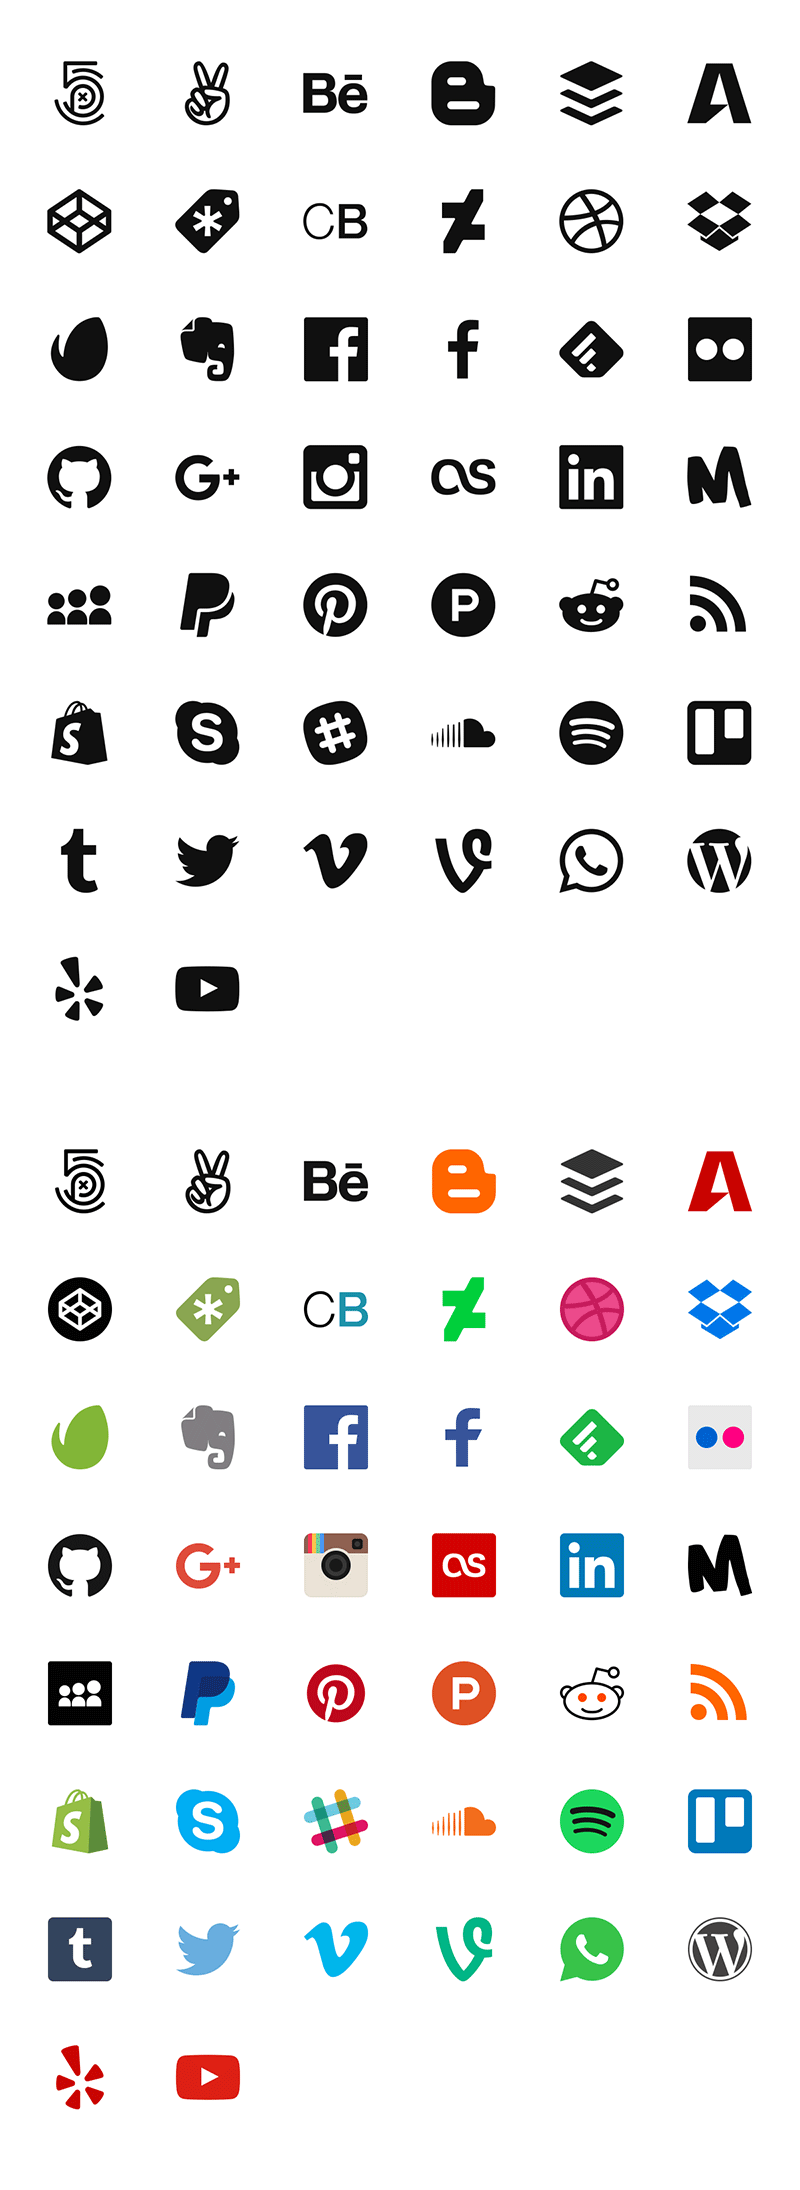 44枚社交图标，SVG格式 图标素材 第1张